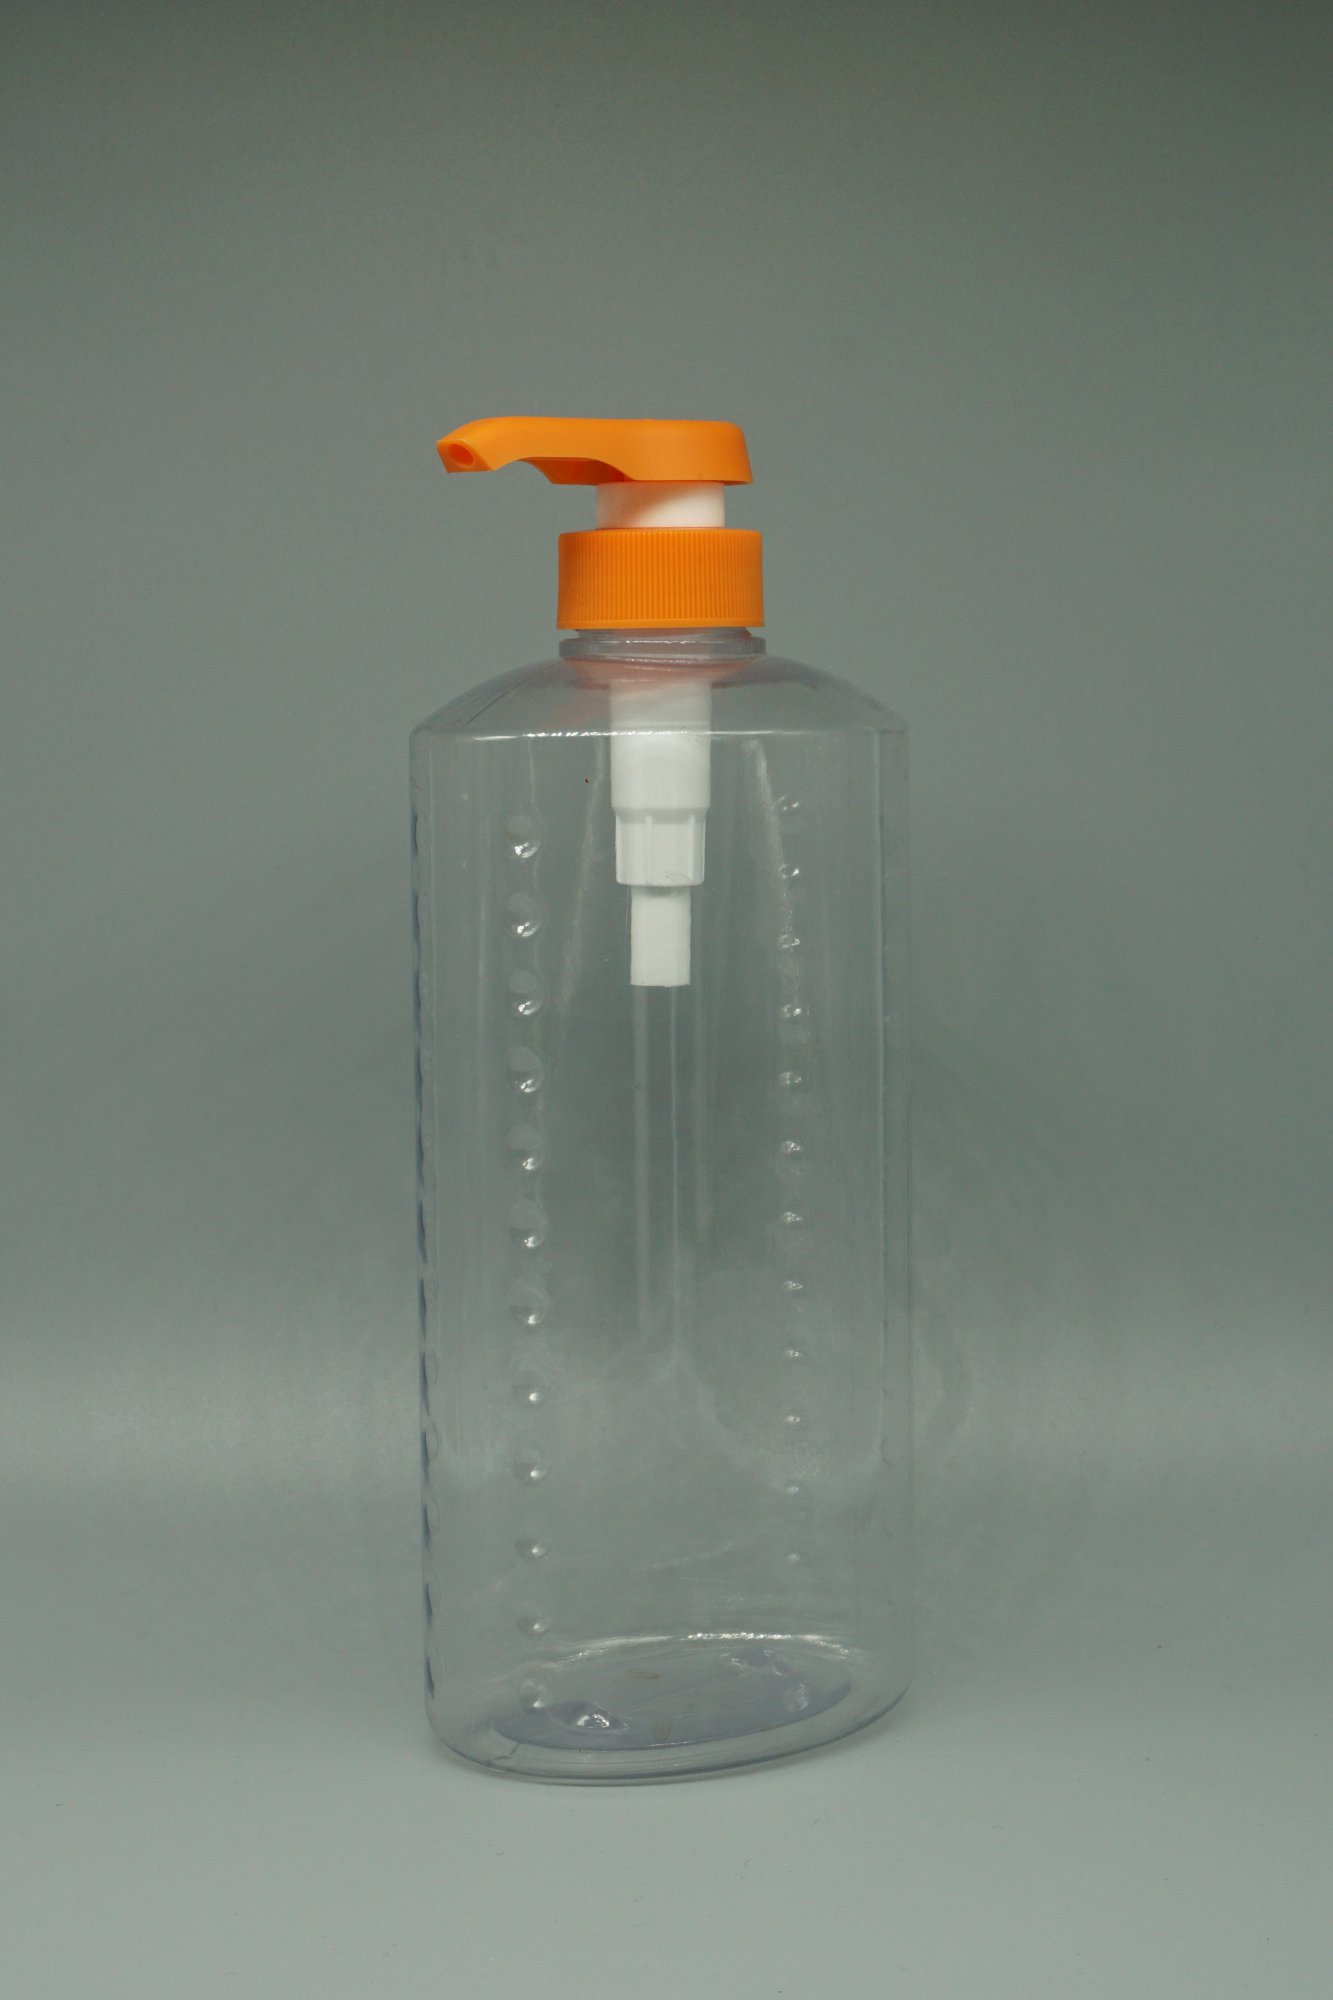 PVC 透明扁瓶 1000ML (SP002_A)